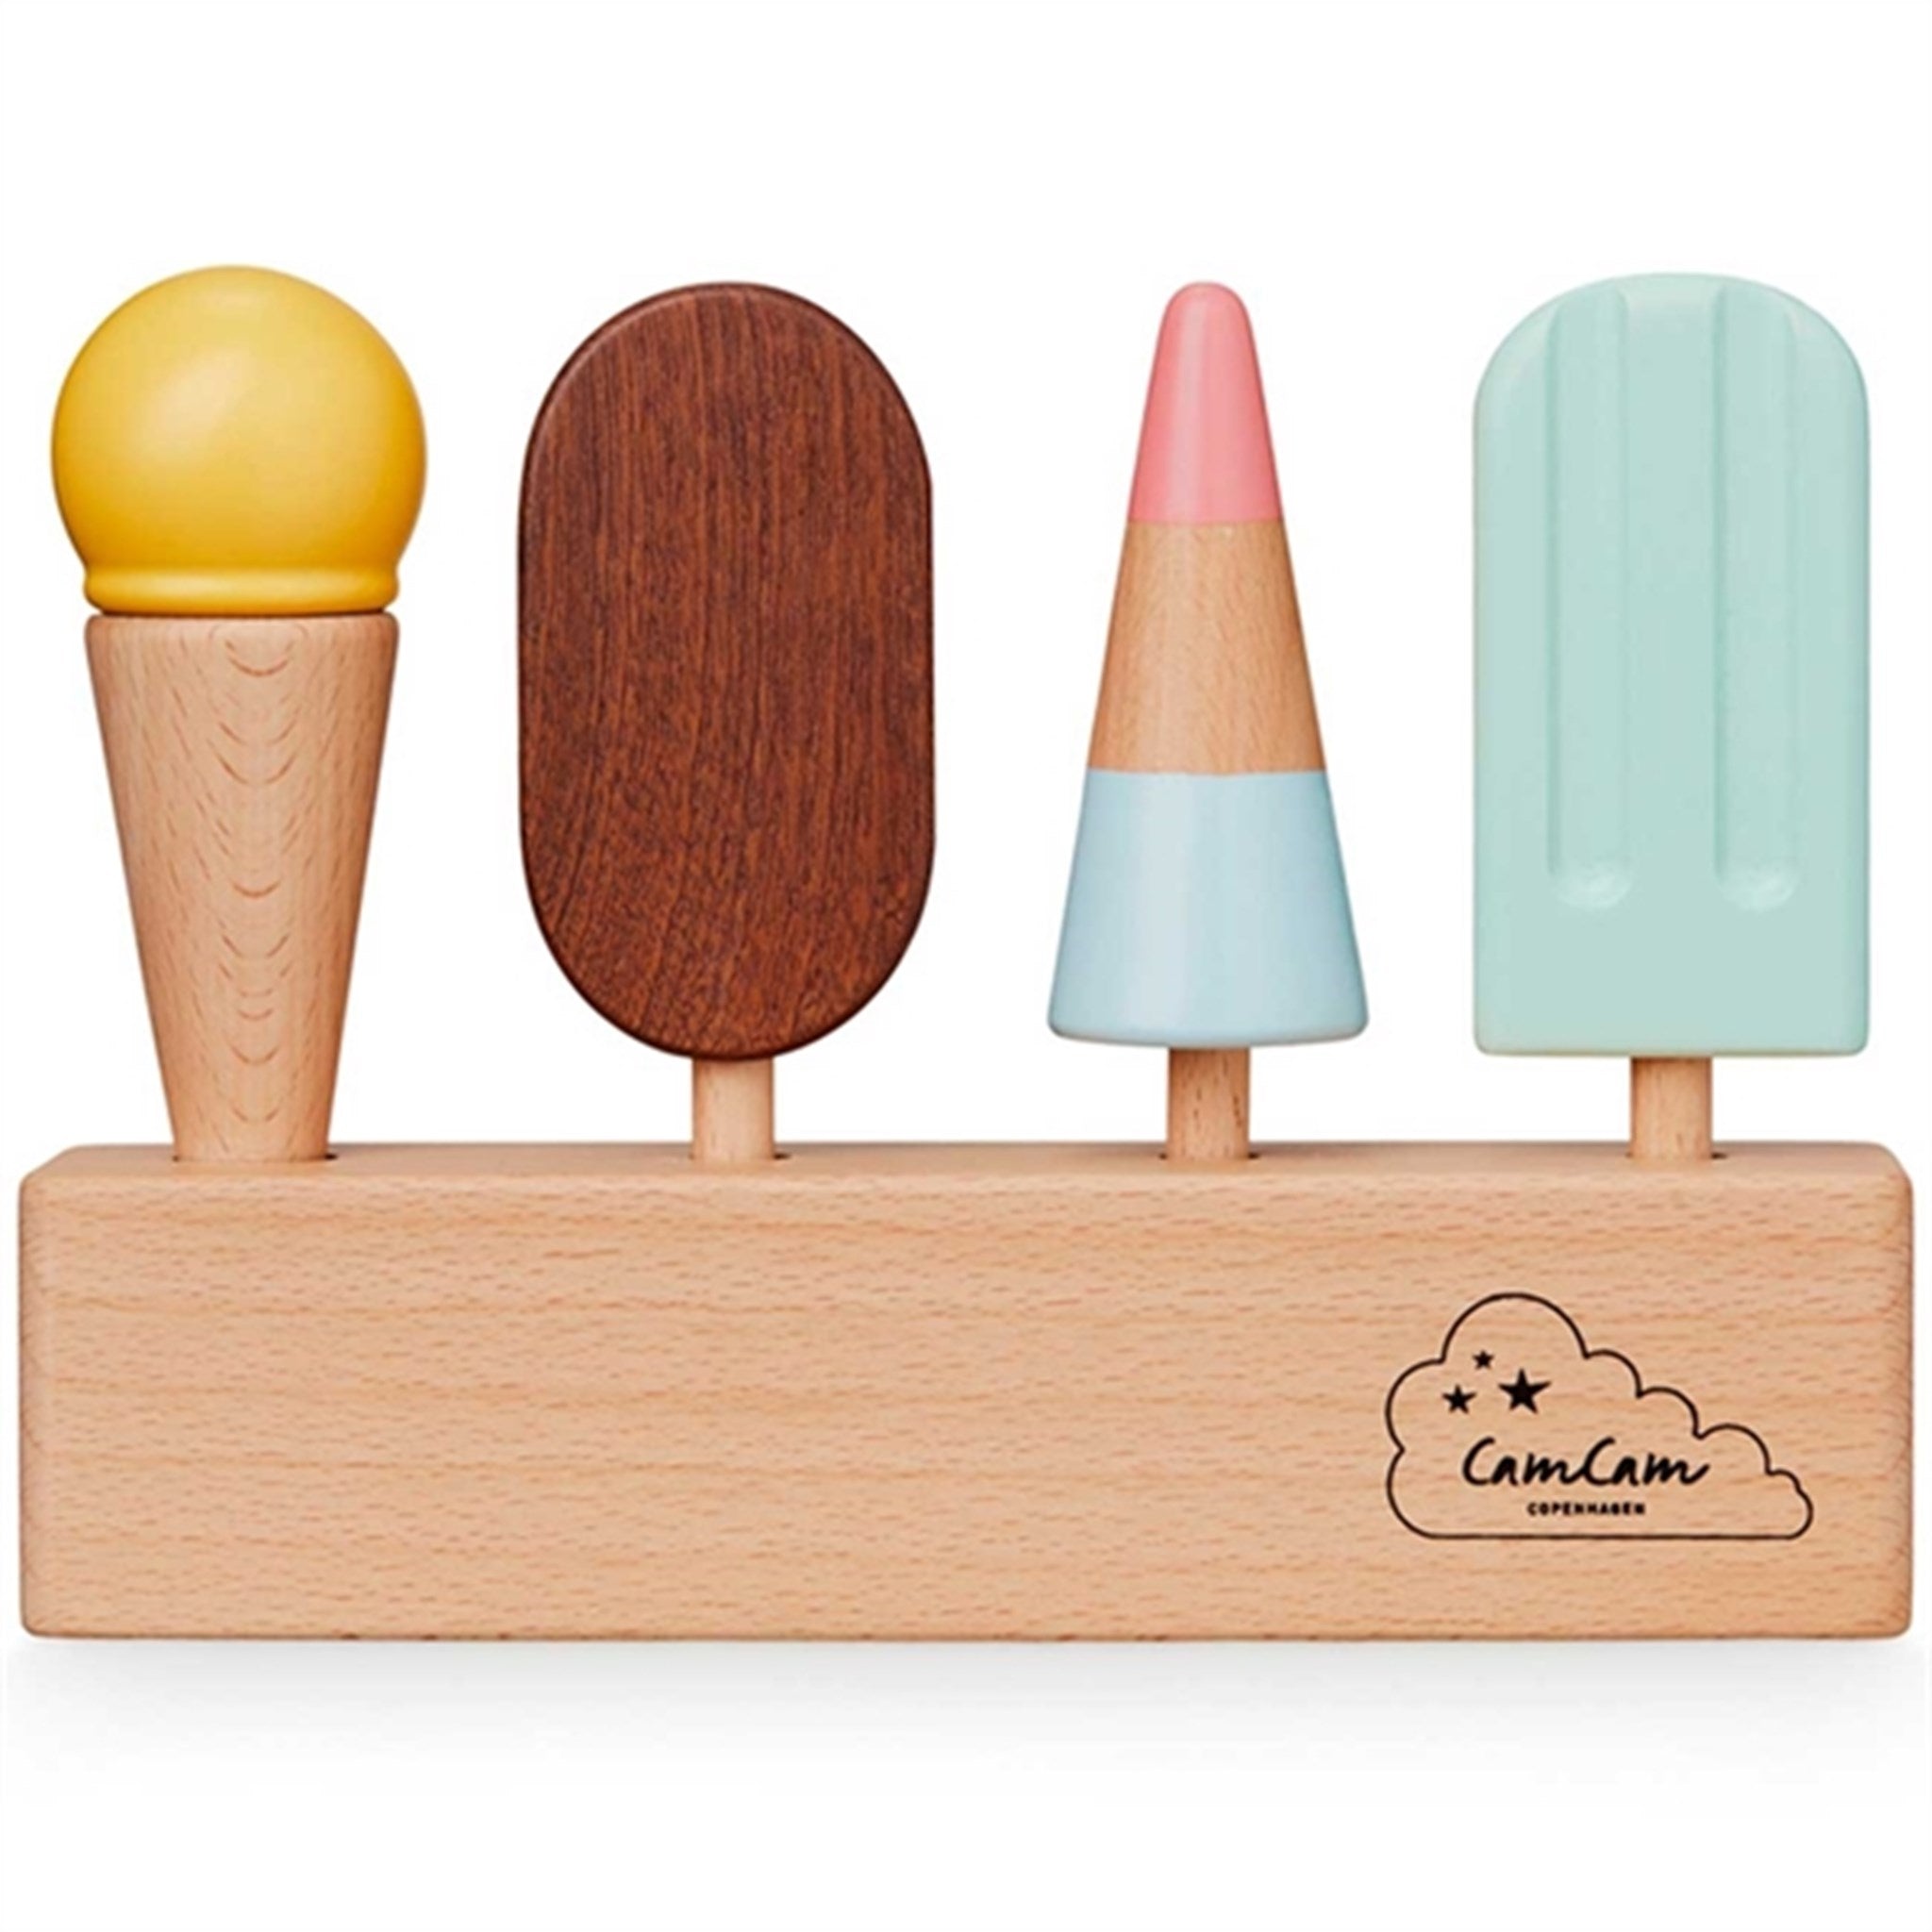 Cam Cam Copenhagen Wooden Ice-cream Set